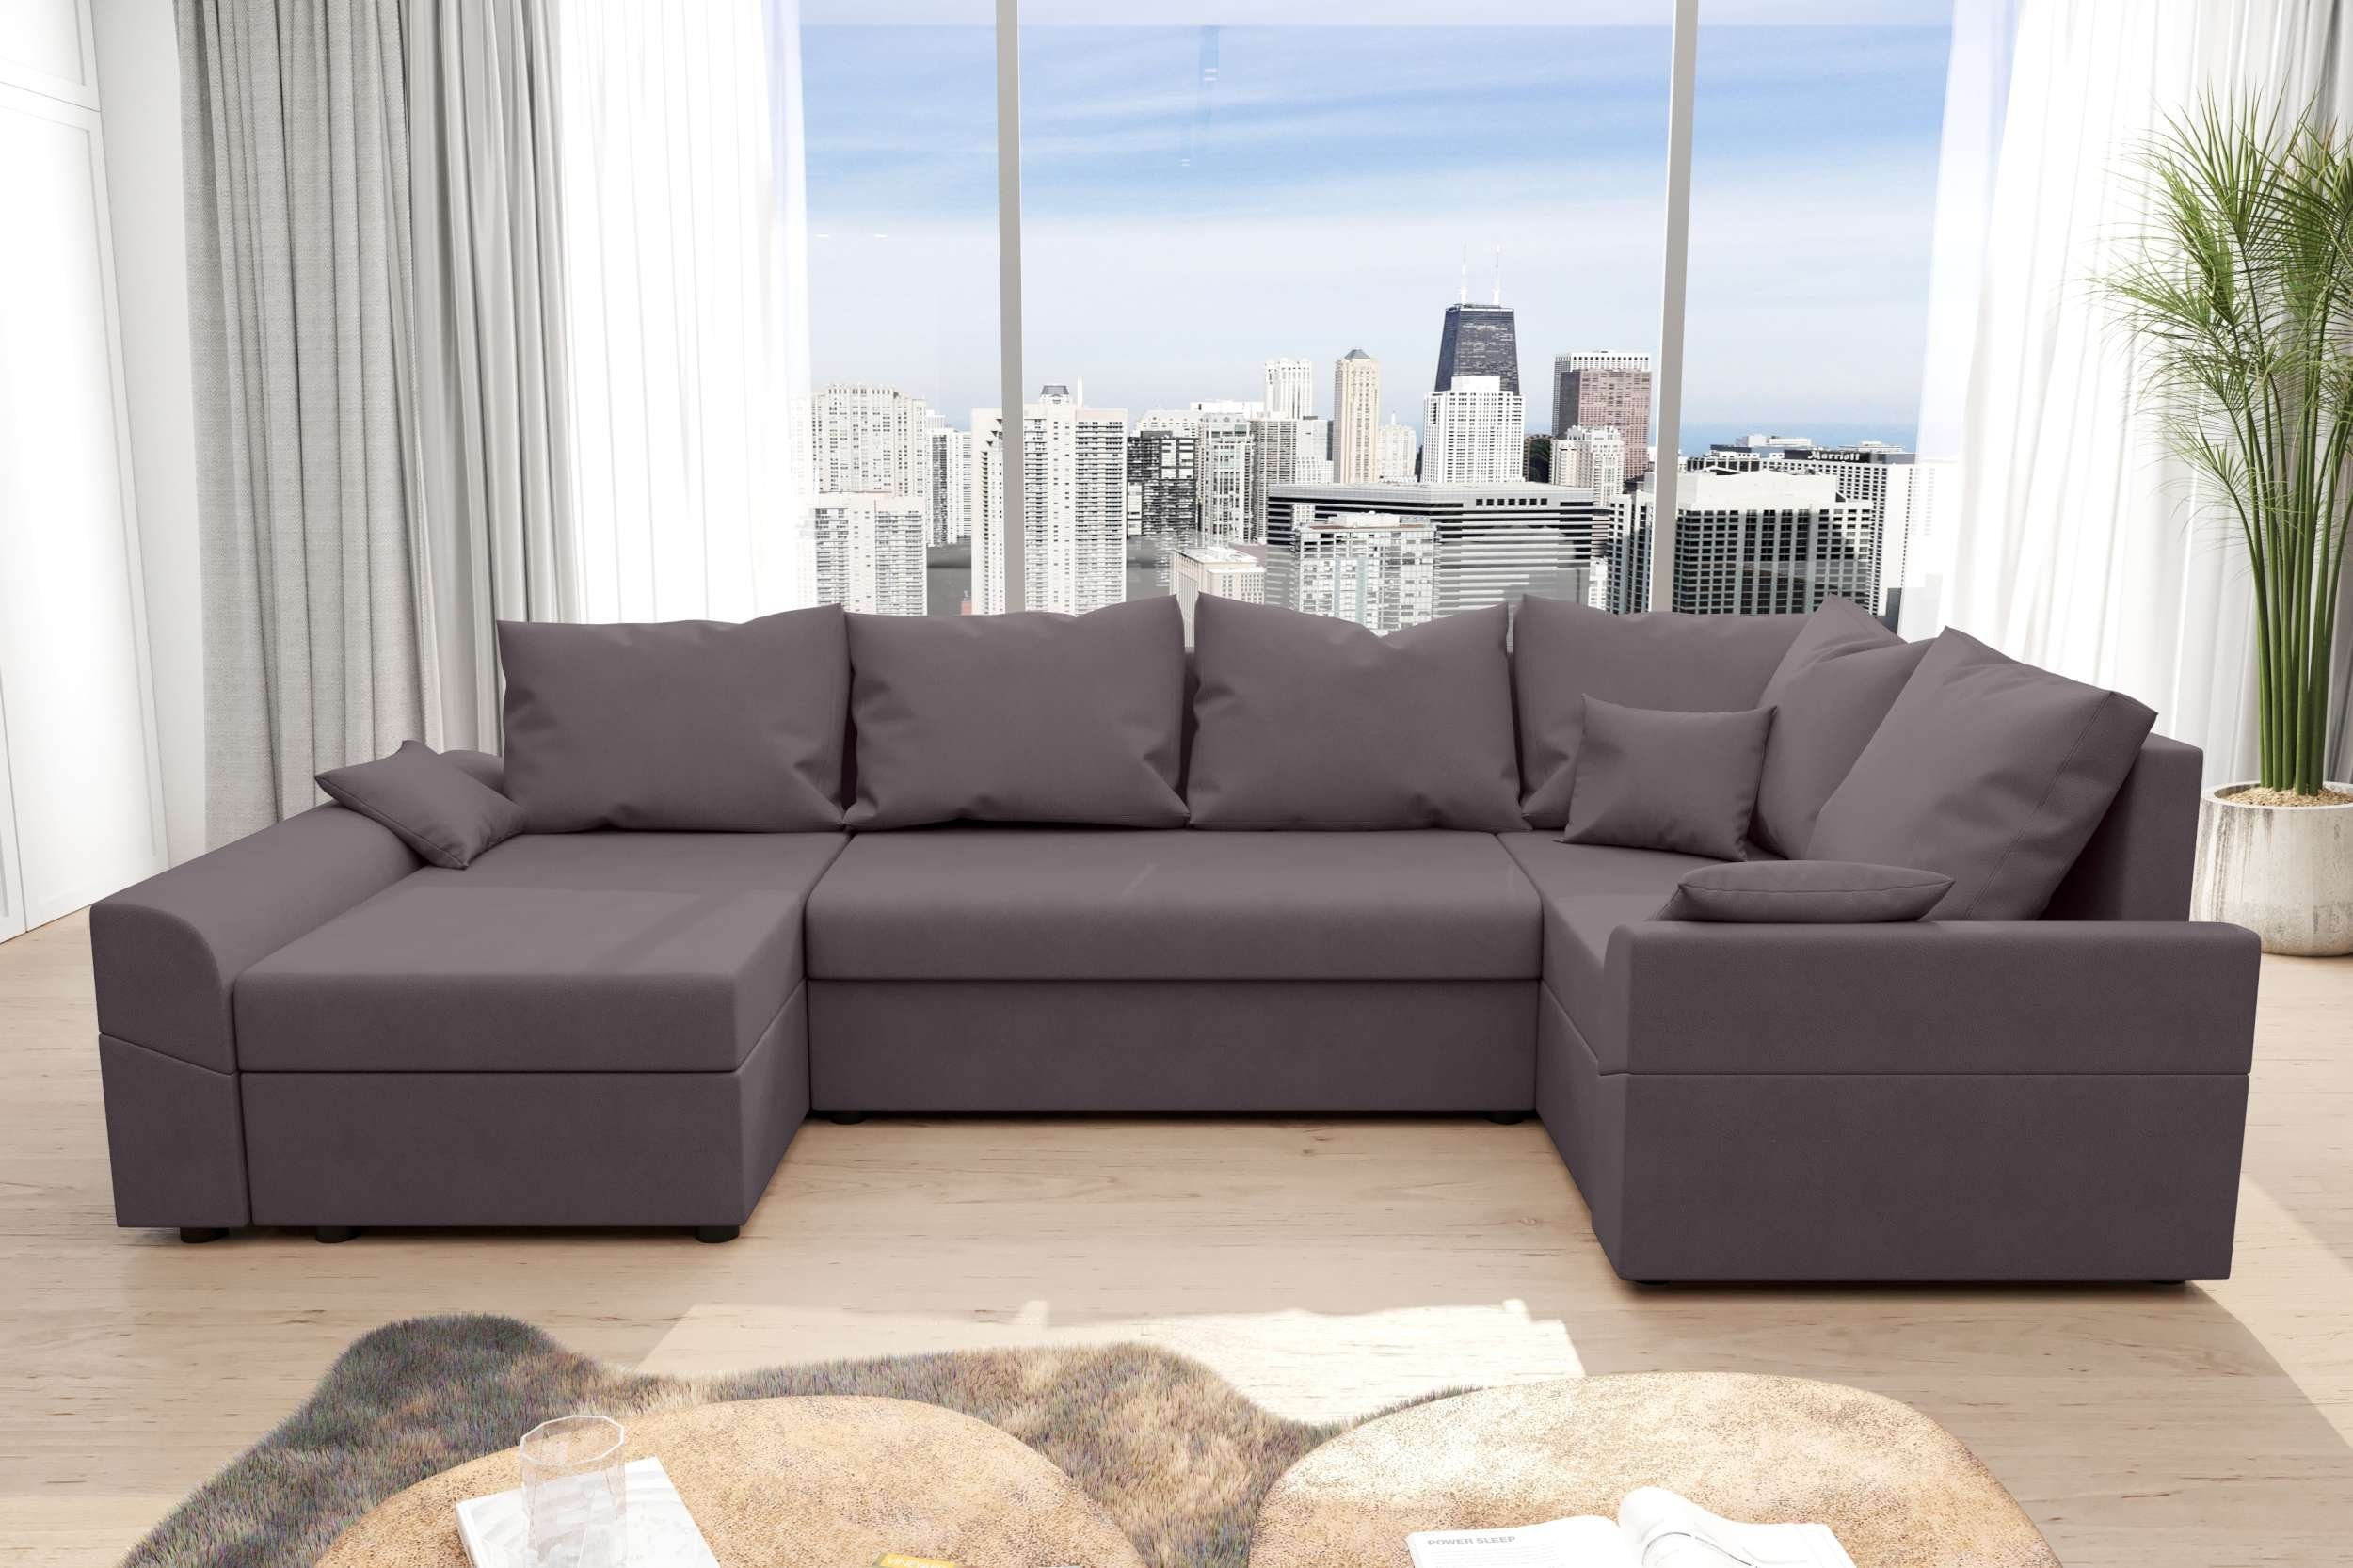 Eckcouch, Design mit Bailey, Wohnlandschaft U-Form, mit Stylefy Sofa, Modern Bettkasten, Bettfunktion, Sitzkomfort,